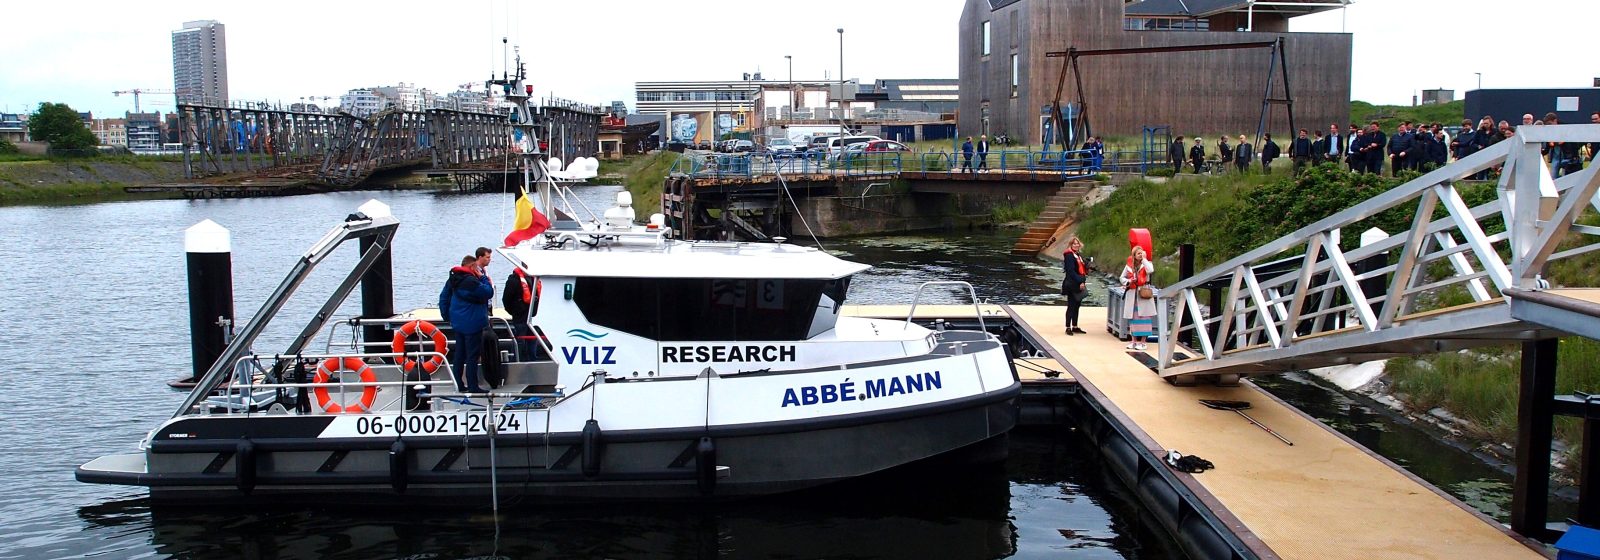 Wetenschapshaven Oostende met werkschip 'Abbé Mann'